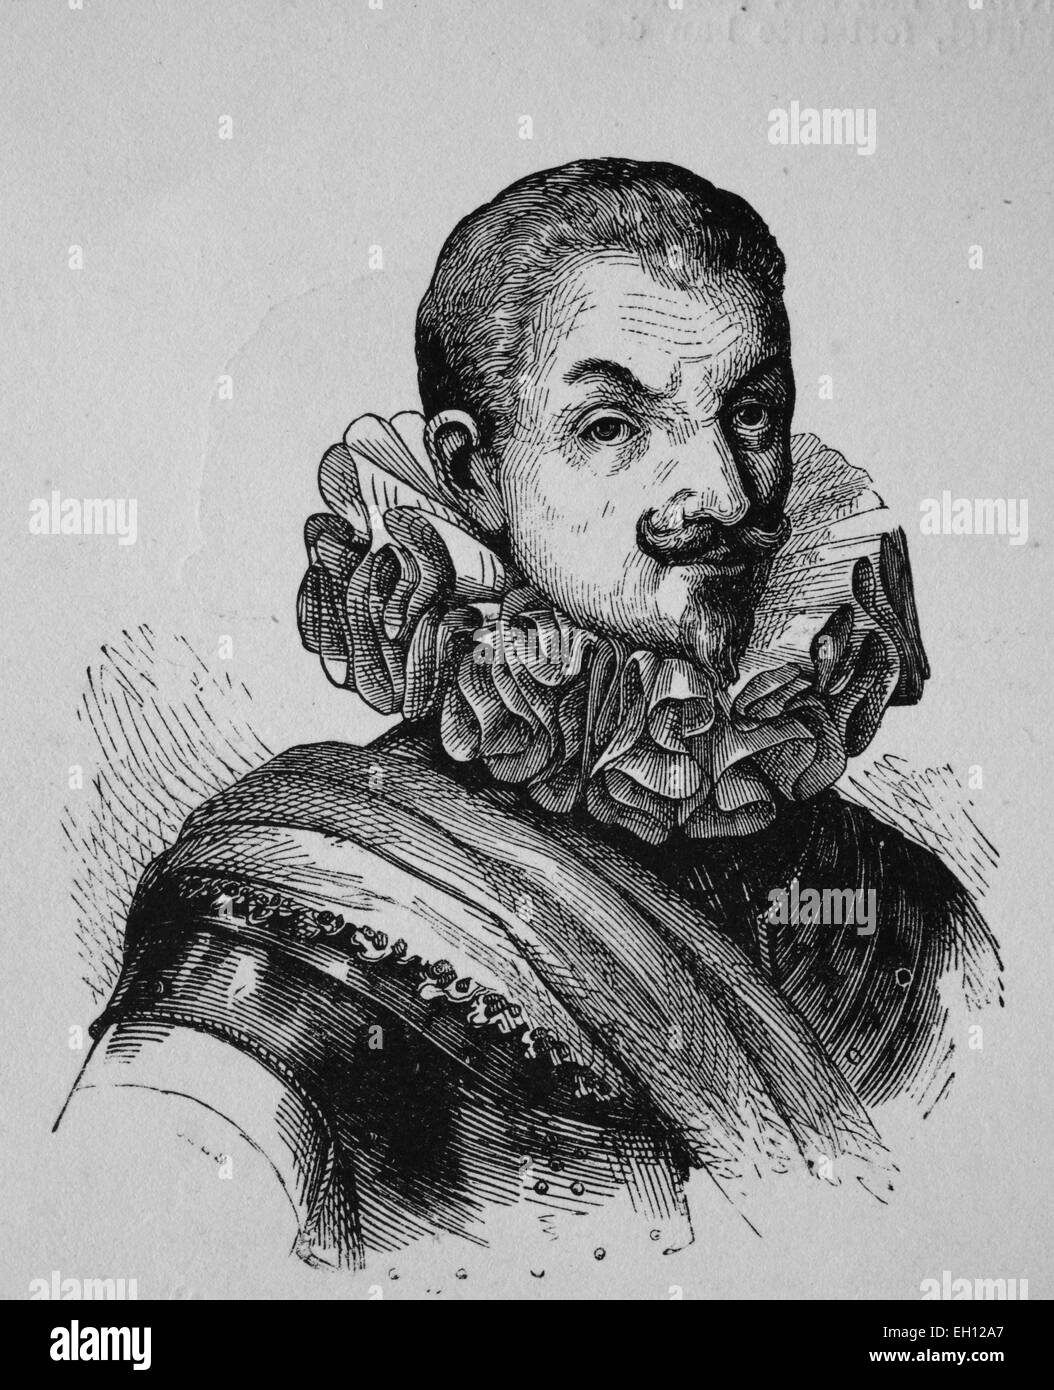 Johann t'Serclaes de Tilly, 1559 - 1632, commandant de la guerre de Trente Ans, gravure sur bois de 1880 Banque D'Images